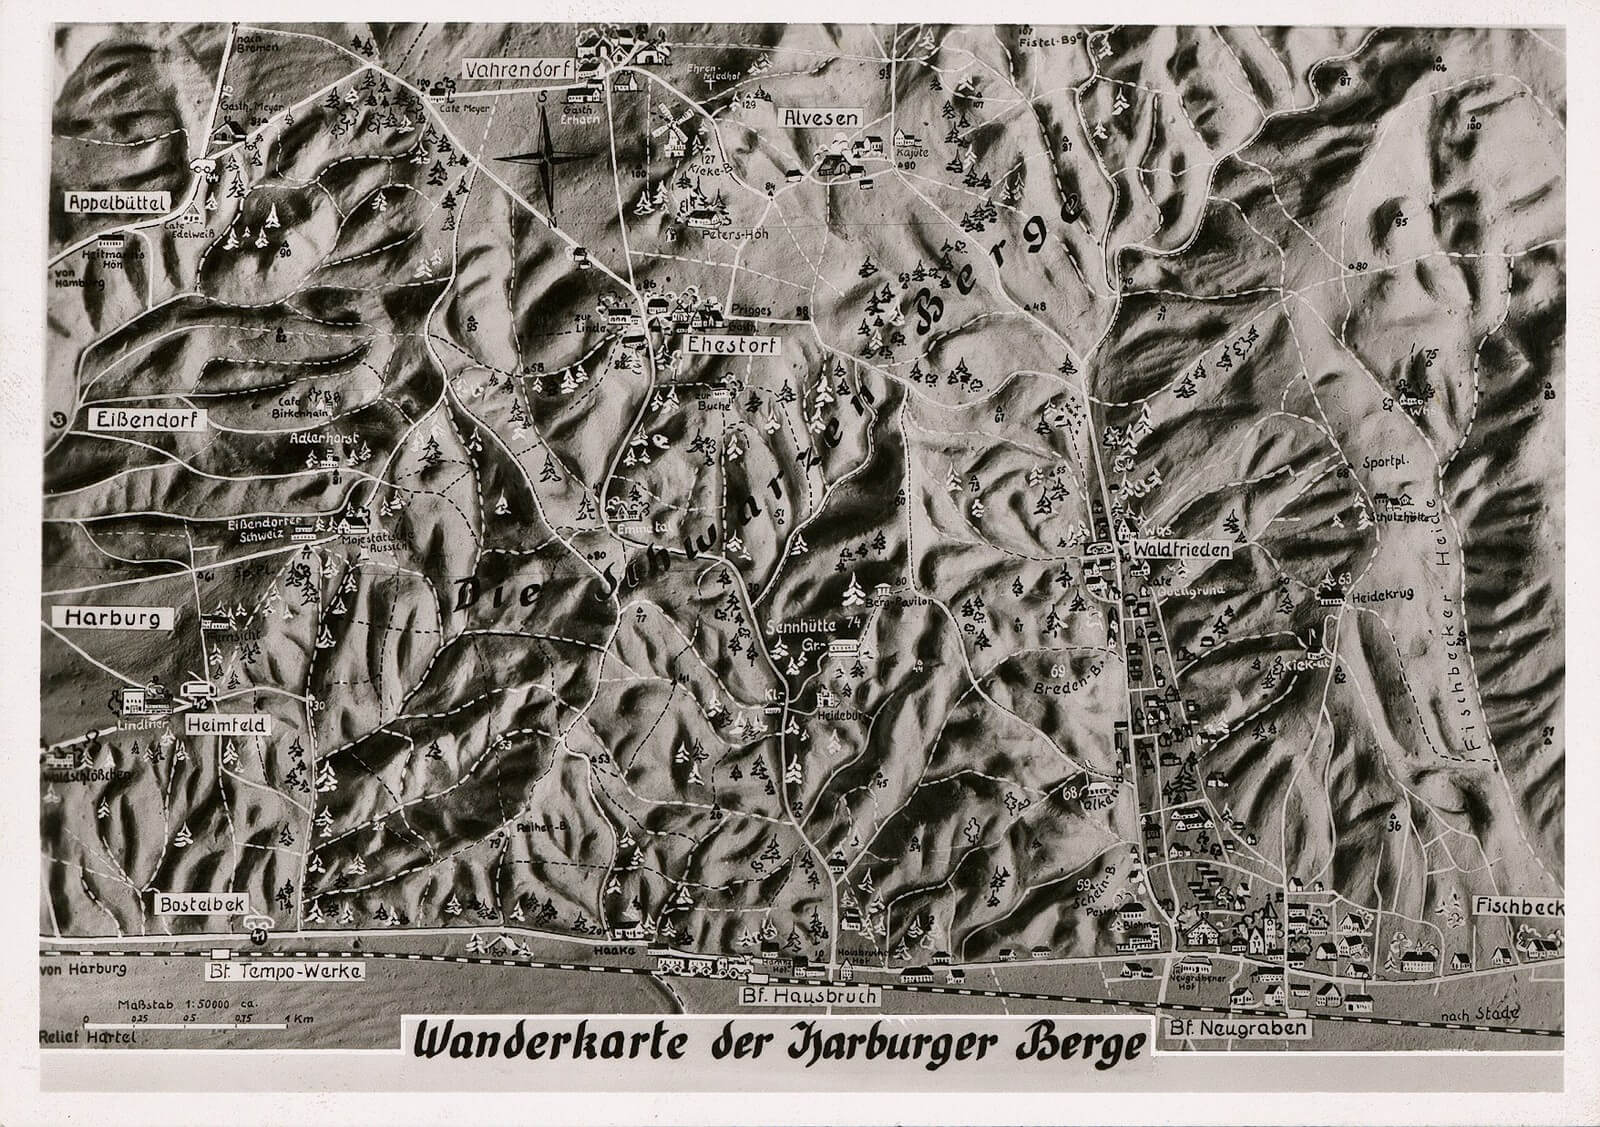 schwarz-weiße Postkarte mit einer gezeichneten Karte der Harburger Berge, eingezeichnet sind diverse Ausflugsziele